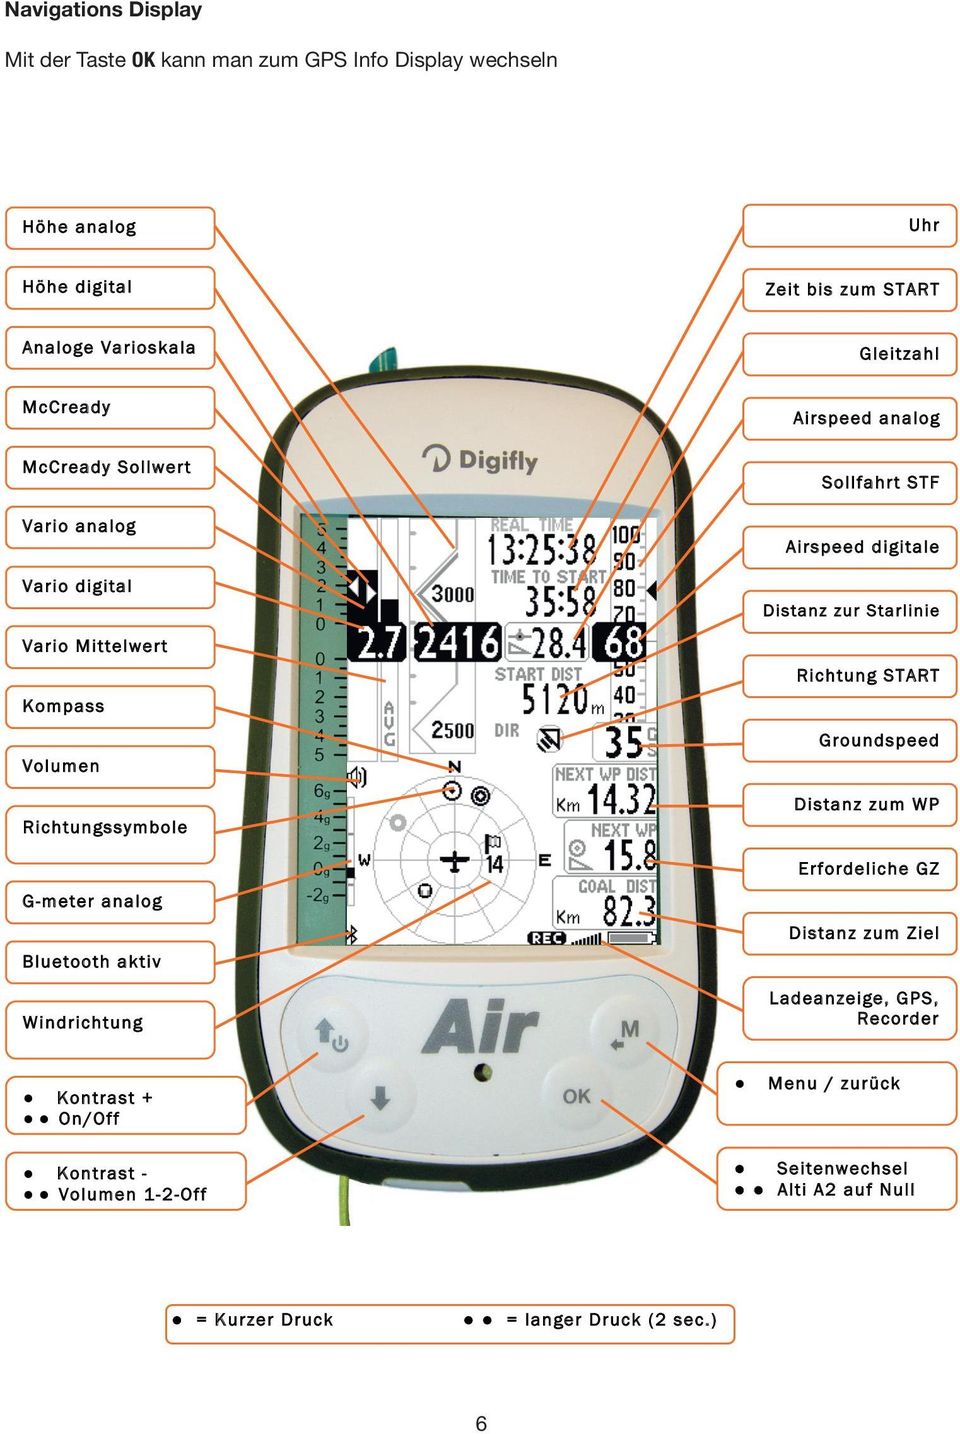 Mittelwert Kompass Volumen Richtungssymbole G-meter analog Bluetooth aktiv Windrichtung Airspeed analog Sollfahrt STF Airspeed digitale Distanz zur